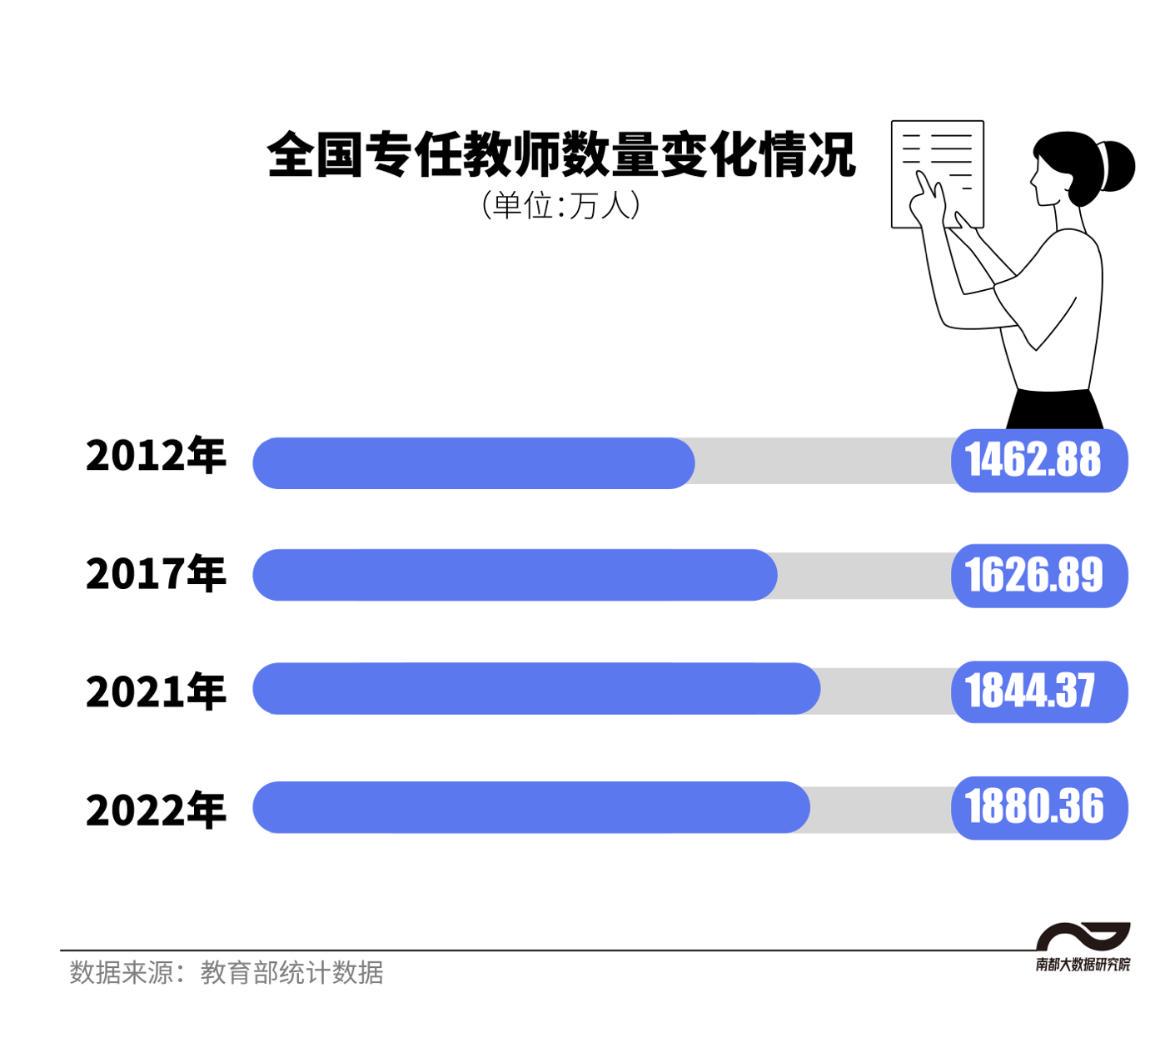 中国教师画像:人数超1880万 我国教师总数达1792.97万人